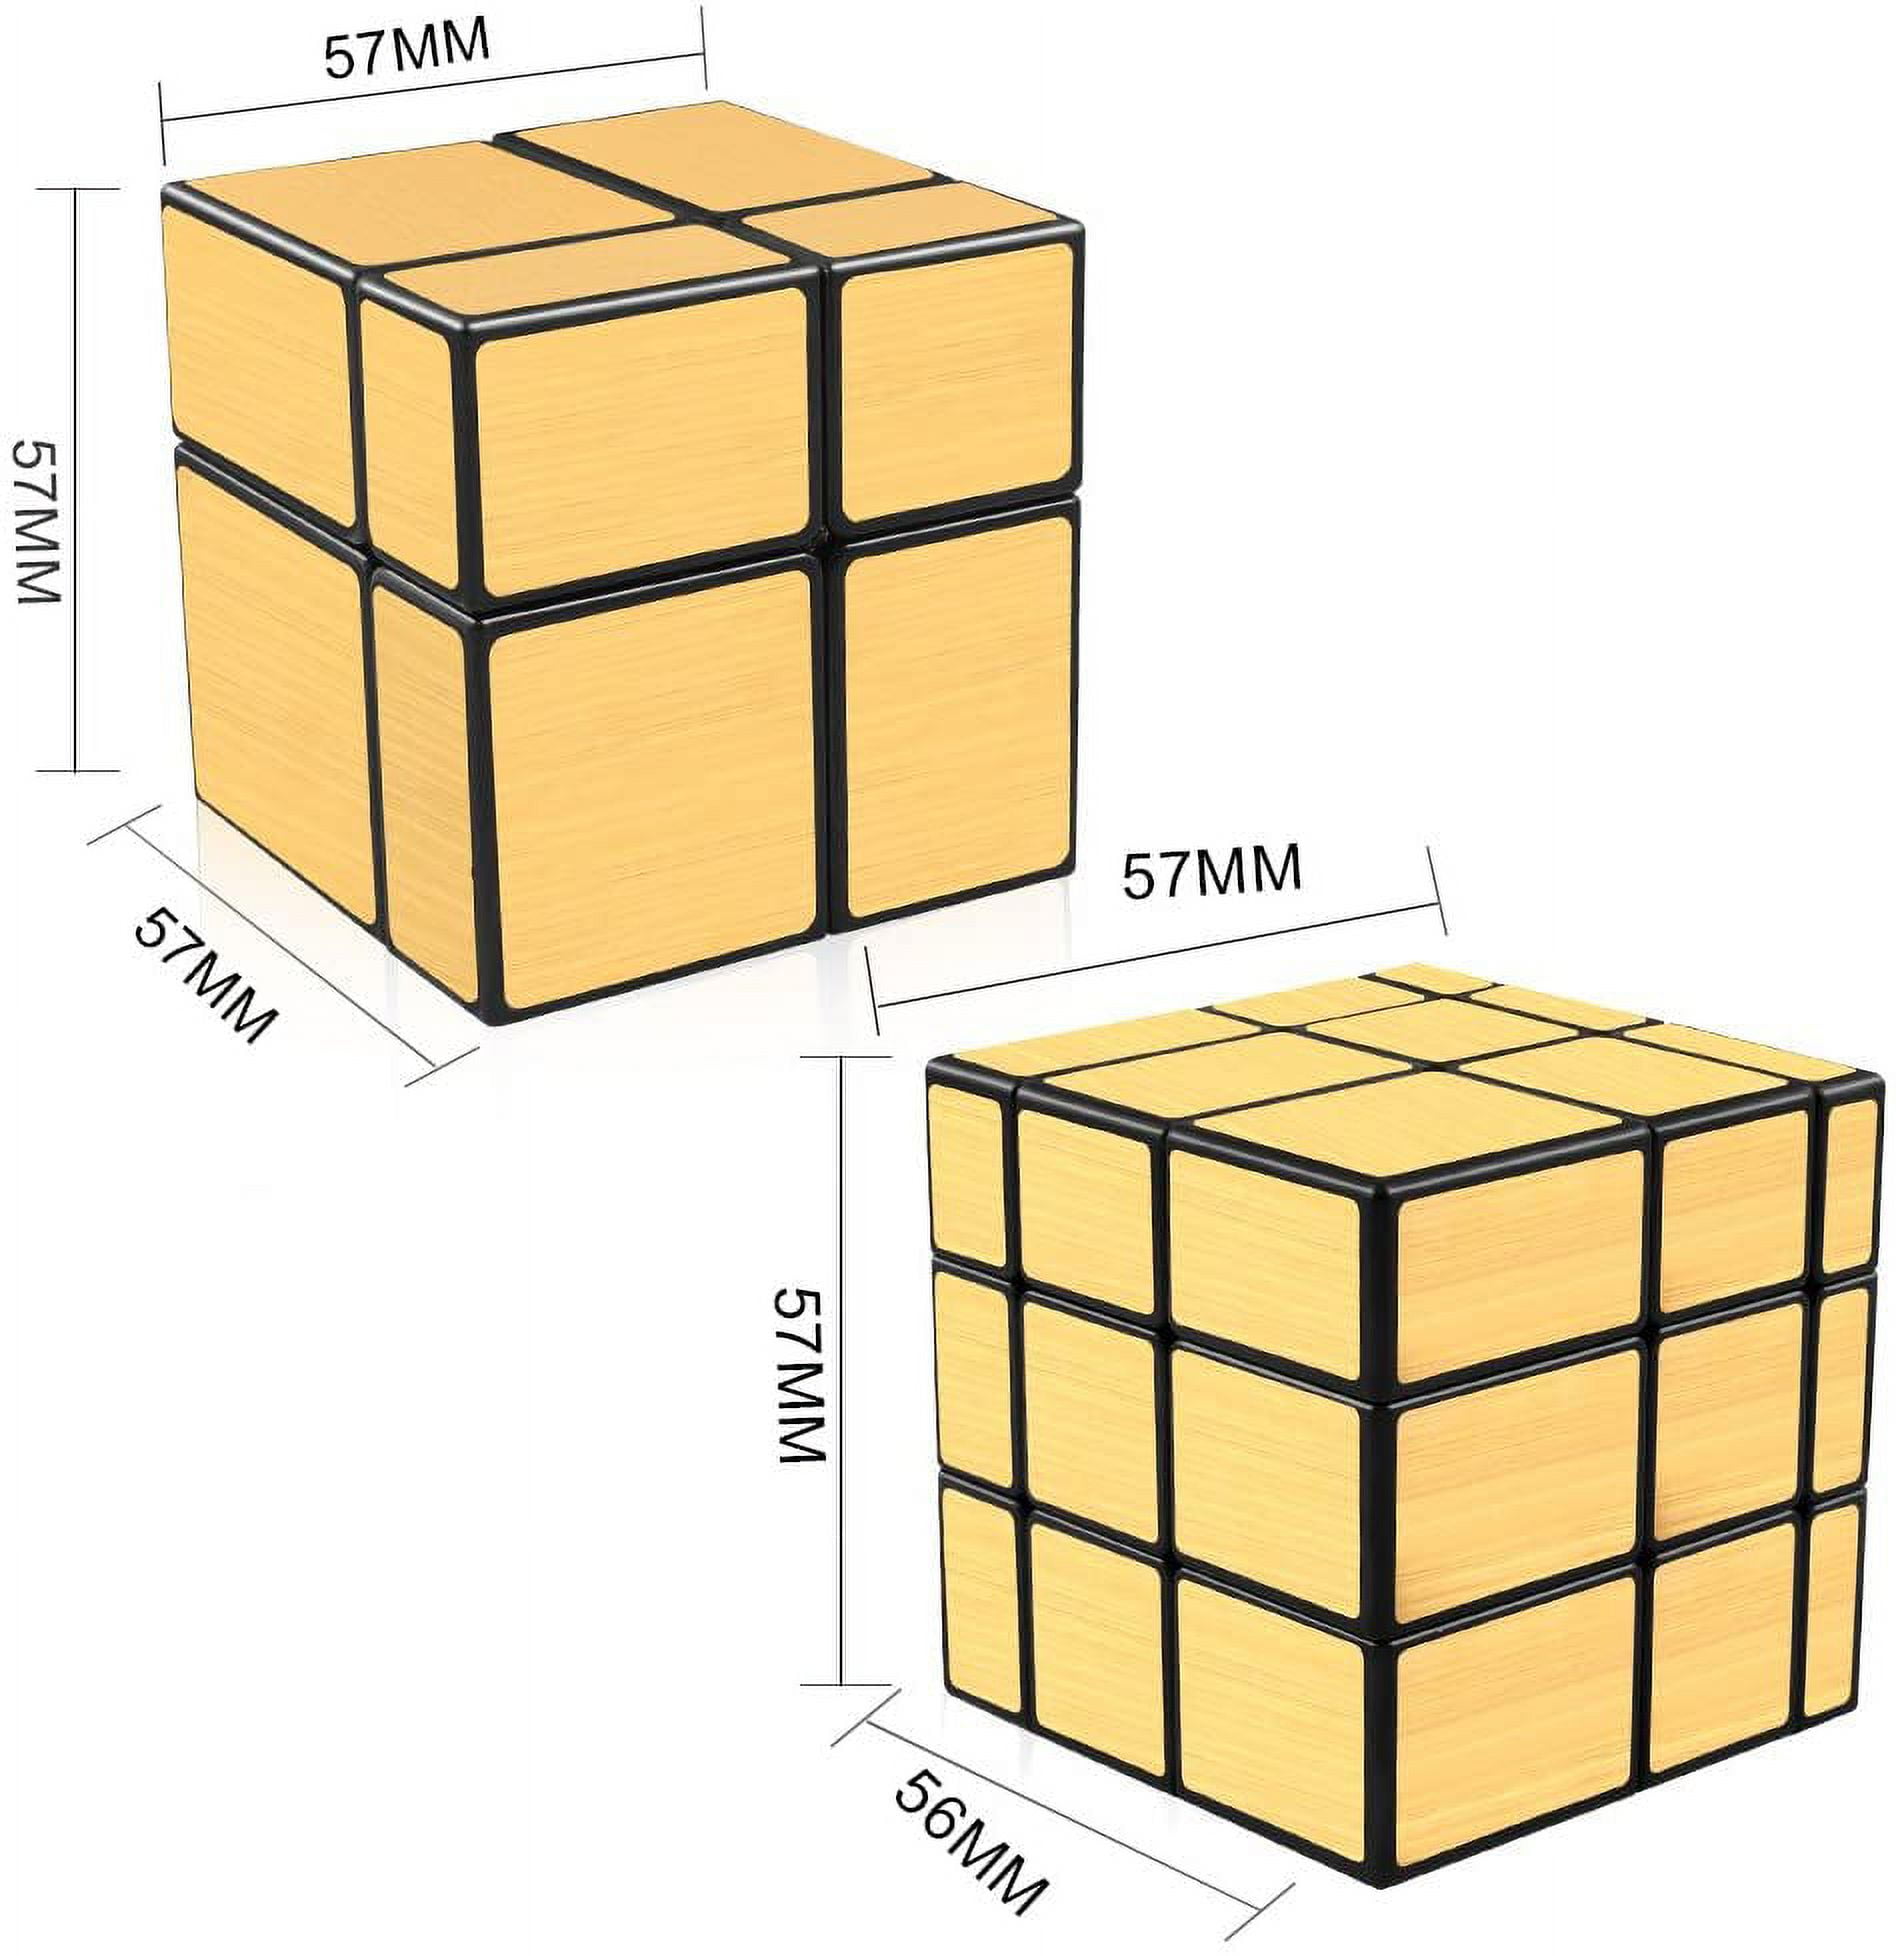 Cubo Mágico ShengShou Mirror 2x2 (Prata) - Series Cube - Toyshow